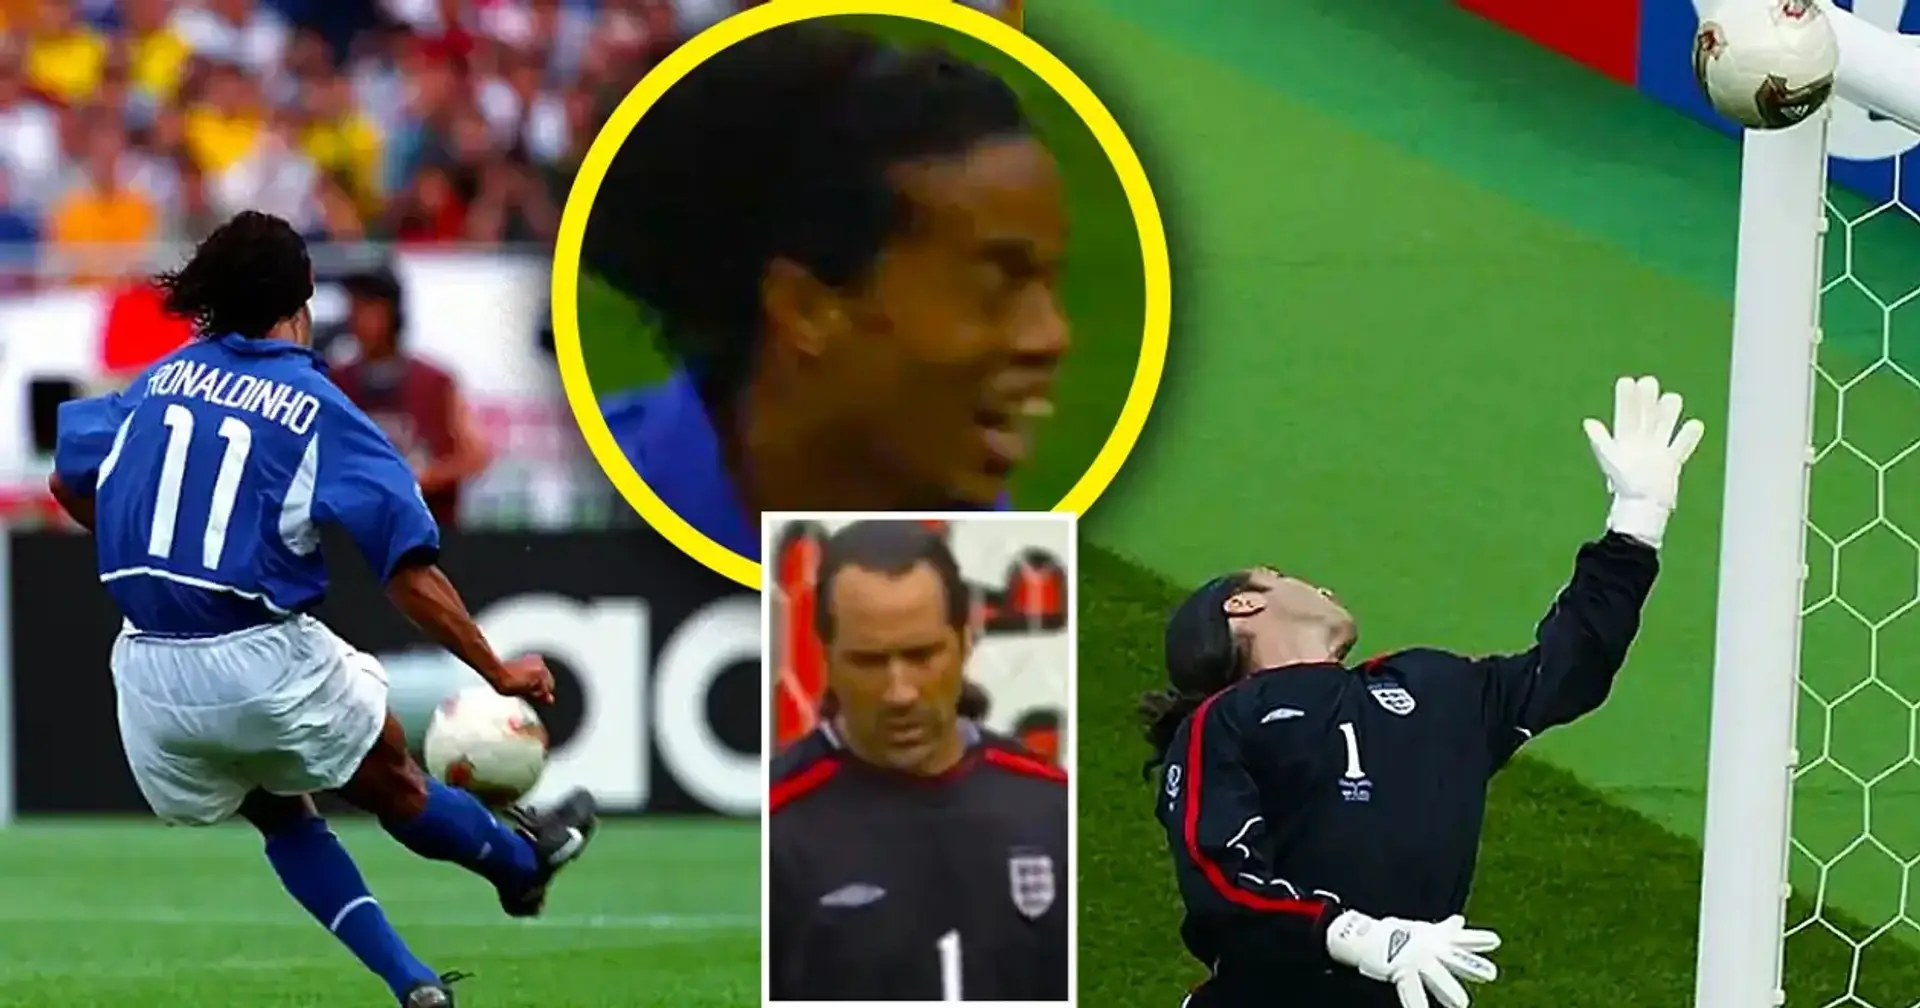 Vor 21 Jahren schoss Ronaldinho bei der Weltmeisterschaft ein Tor aus 40 Metern: Es sah aus wie ein Fehler von Seaman, aber der Torwart hatte kaum eine Chance